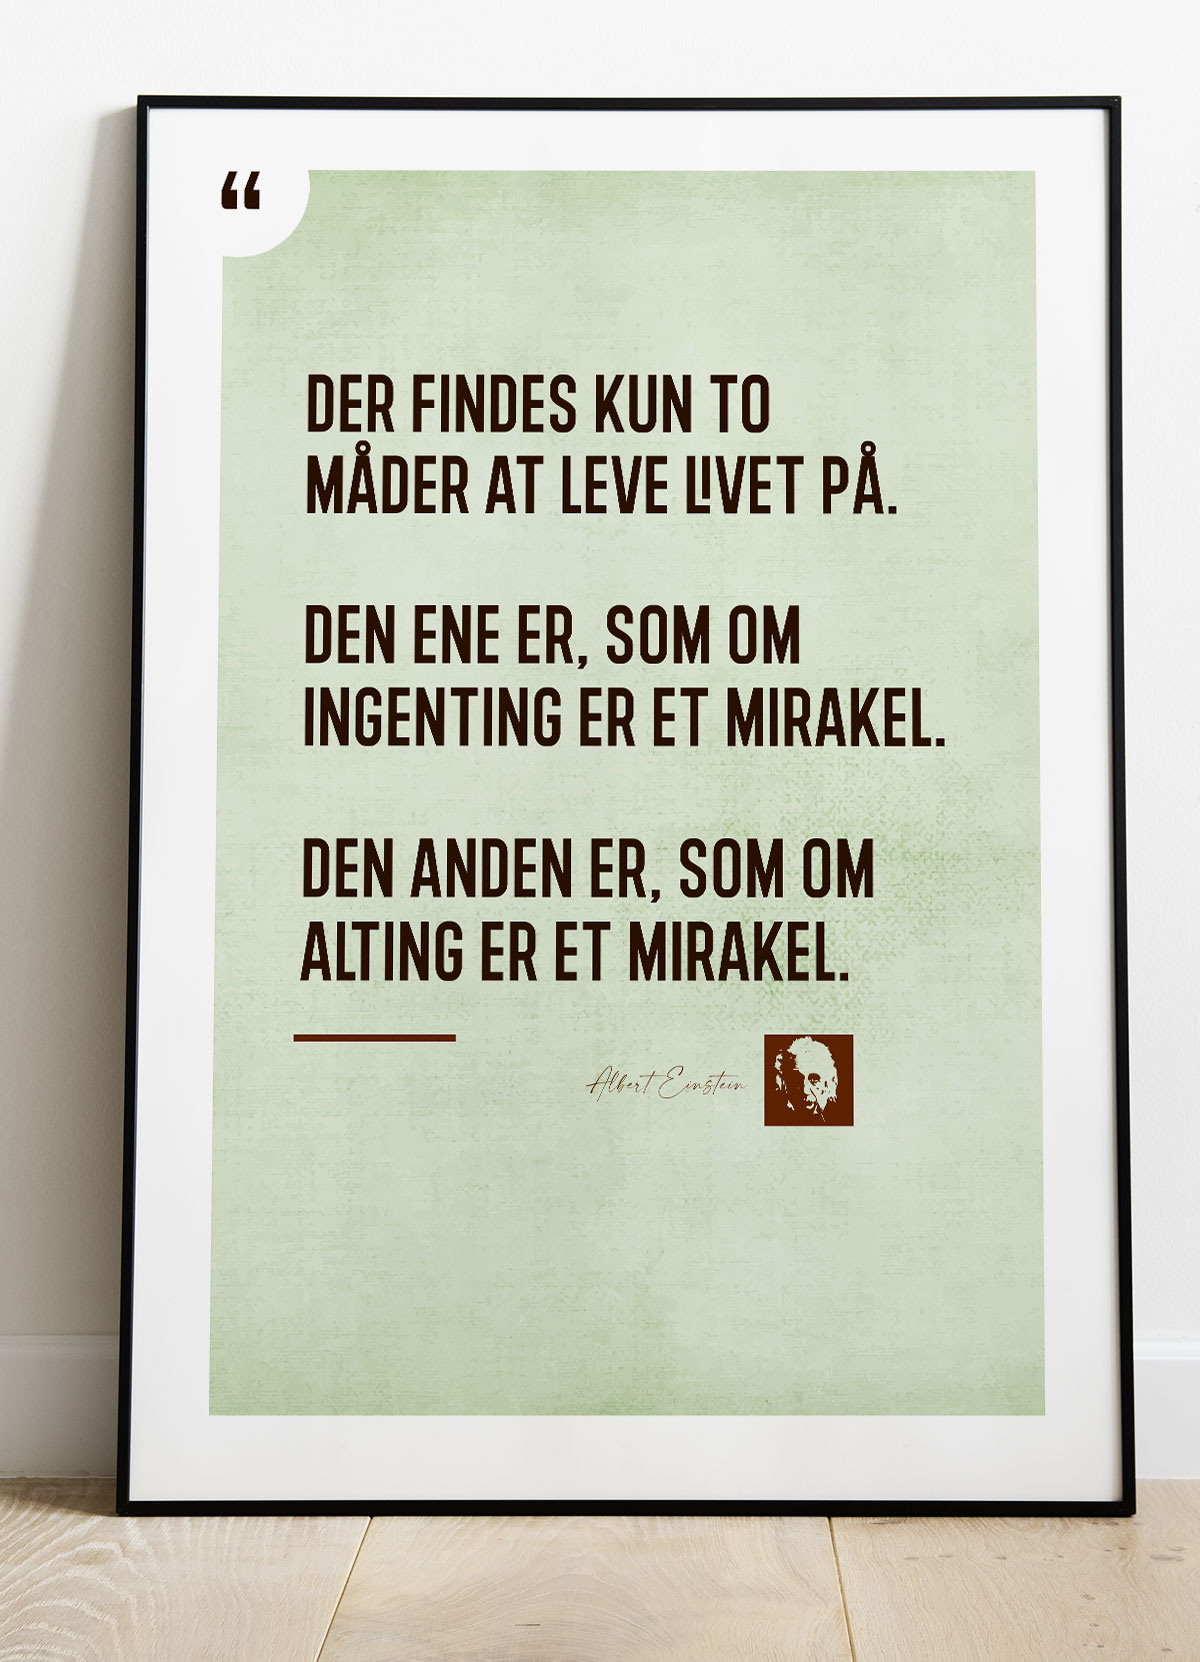 Se Einstein-mirakel-citatplakat - 50 x 70 cm - Kr. 279,- hos Detbedstehjem.dk